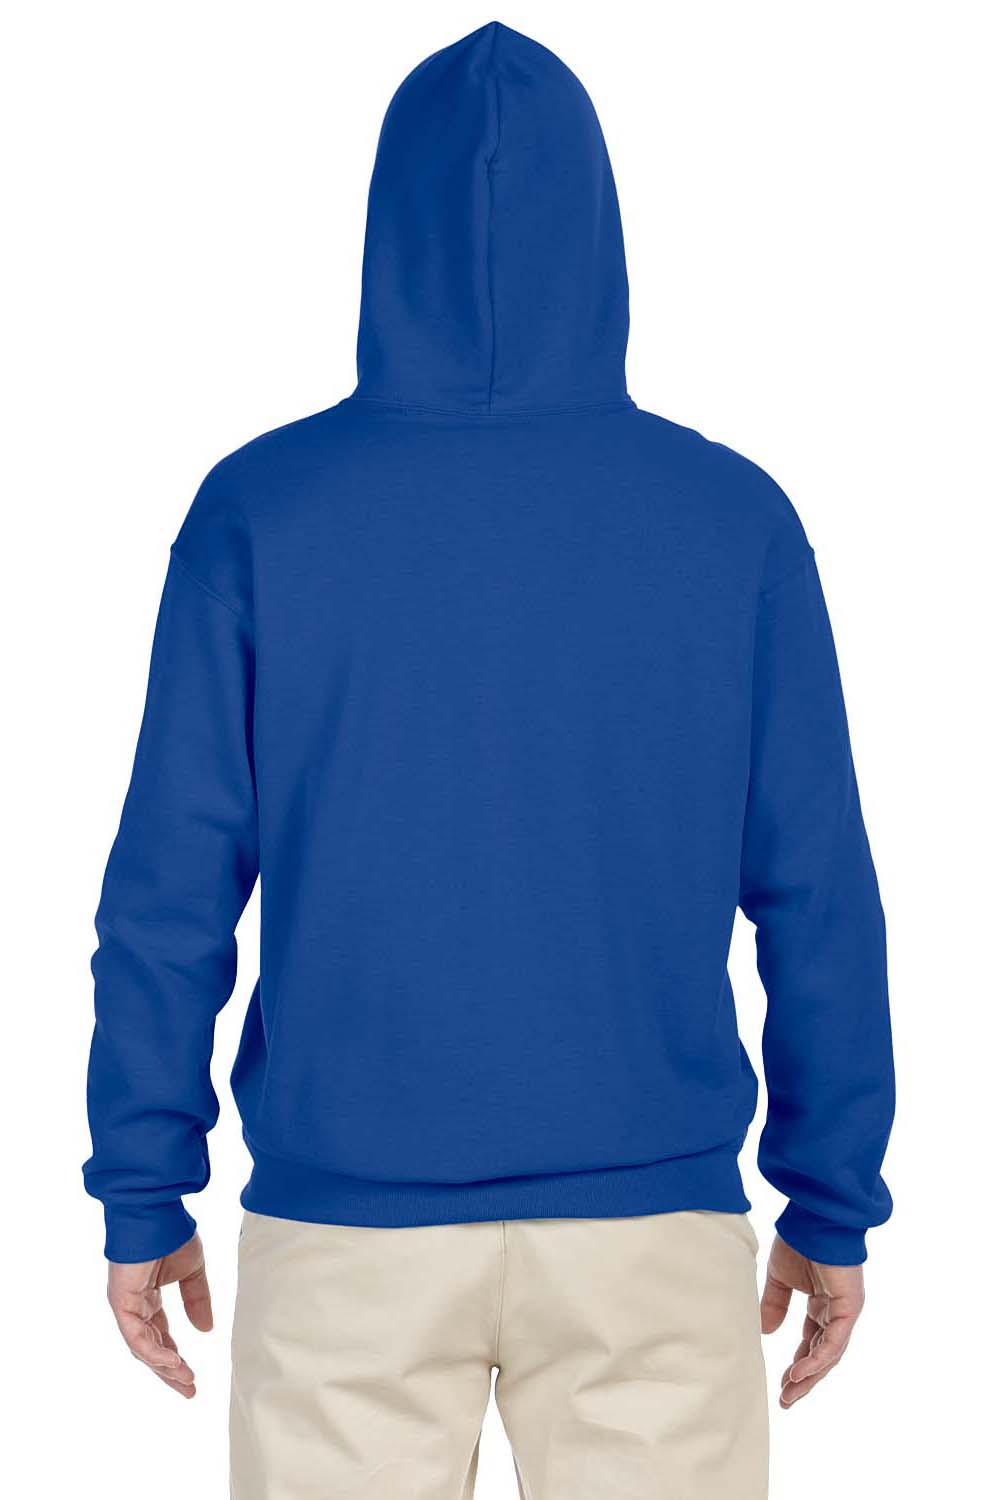 Jerzees 996 Mens NuBlend Fleece Hooded Sweatshirt Hoodie Royal Blue Back